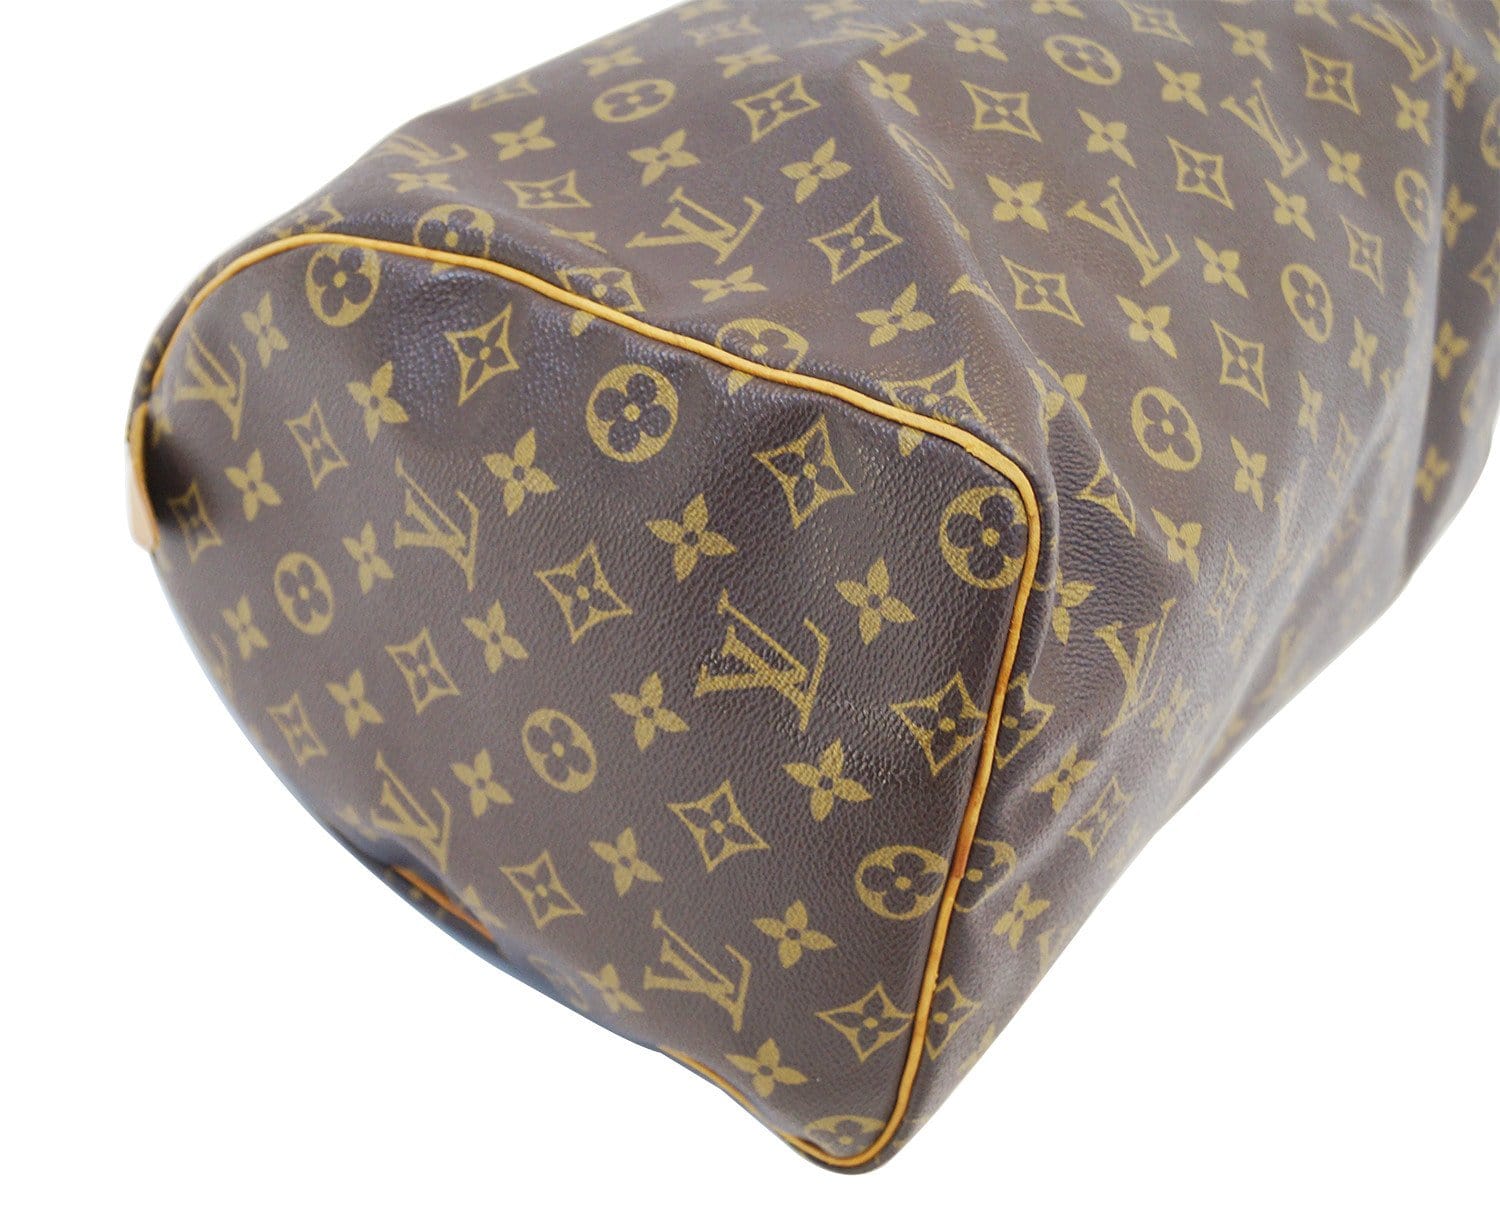 Authentic Louis Vuitton Speedy 40 Monogram Handbag for Sale in West Palm  Beach, FL - OfferUp